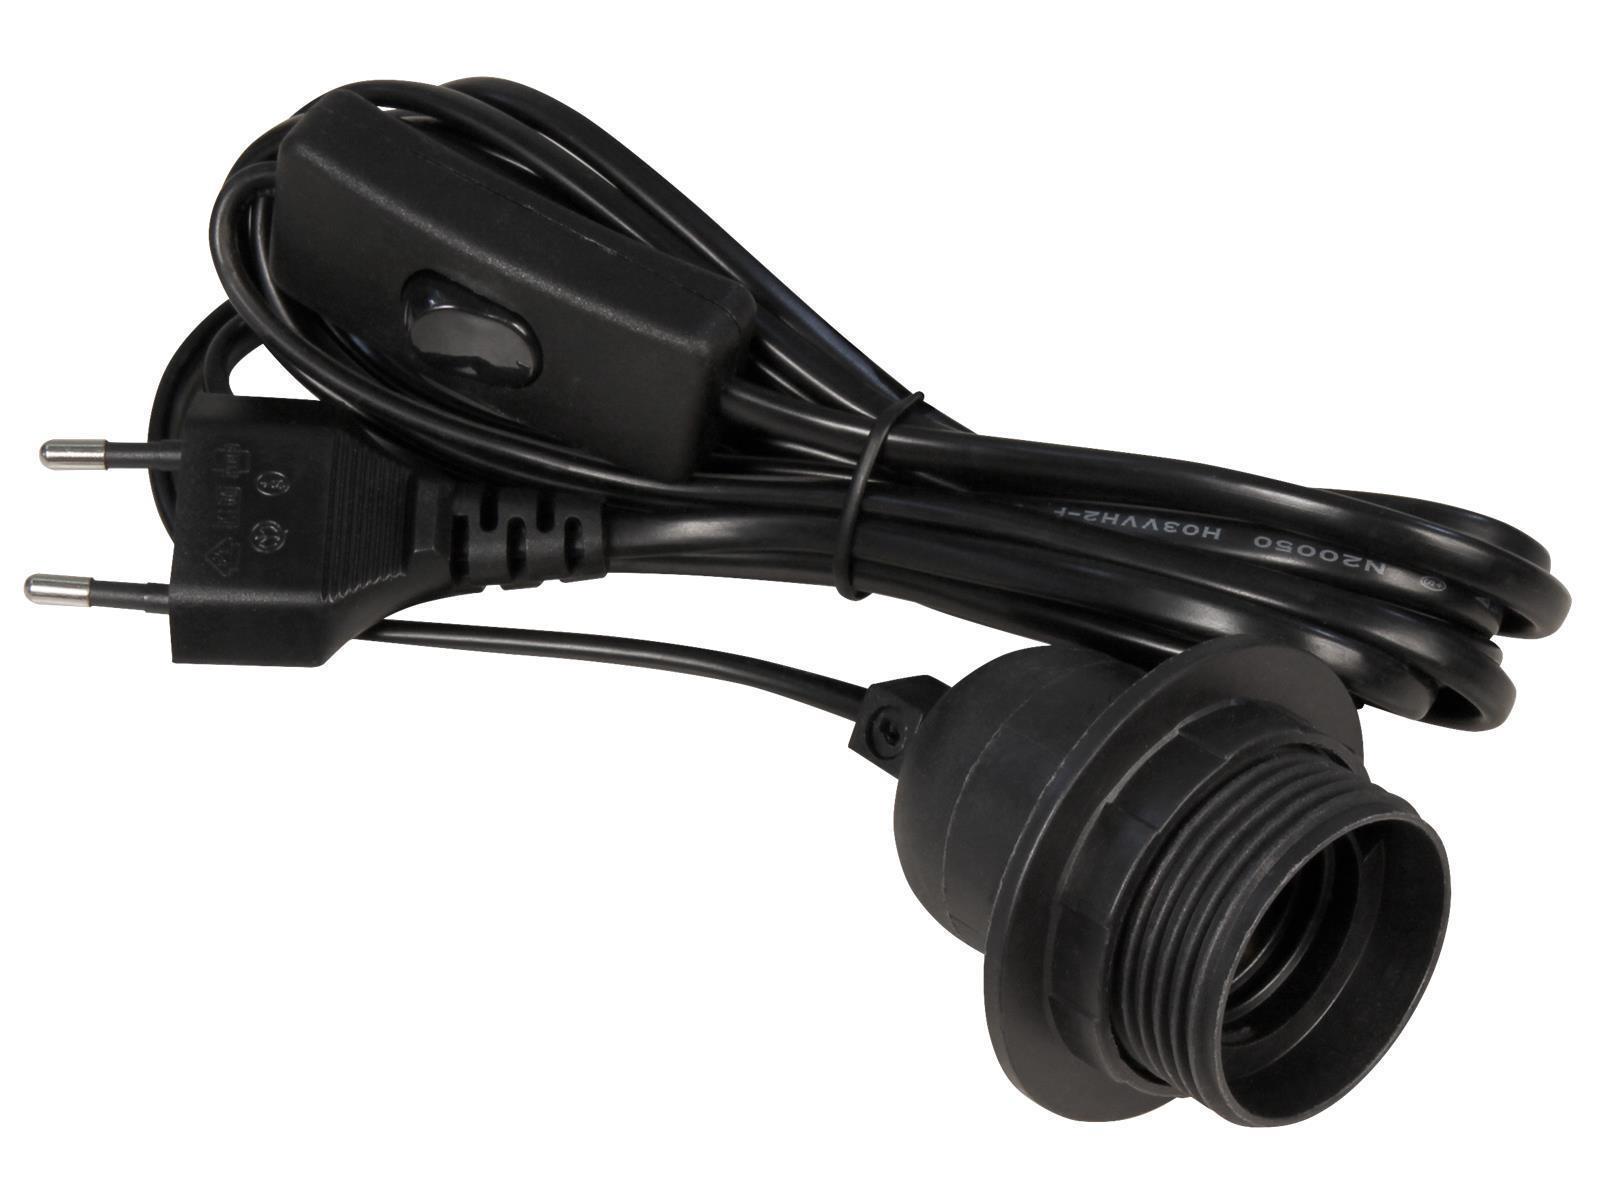 Euro-Netzkabel McPower mit Schnurschalter und E27 Fassung, 3,5m, schwarz